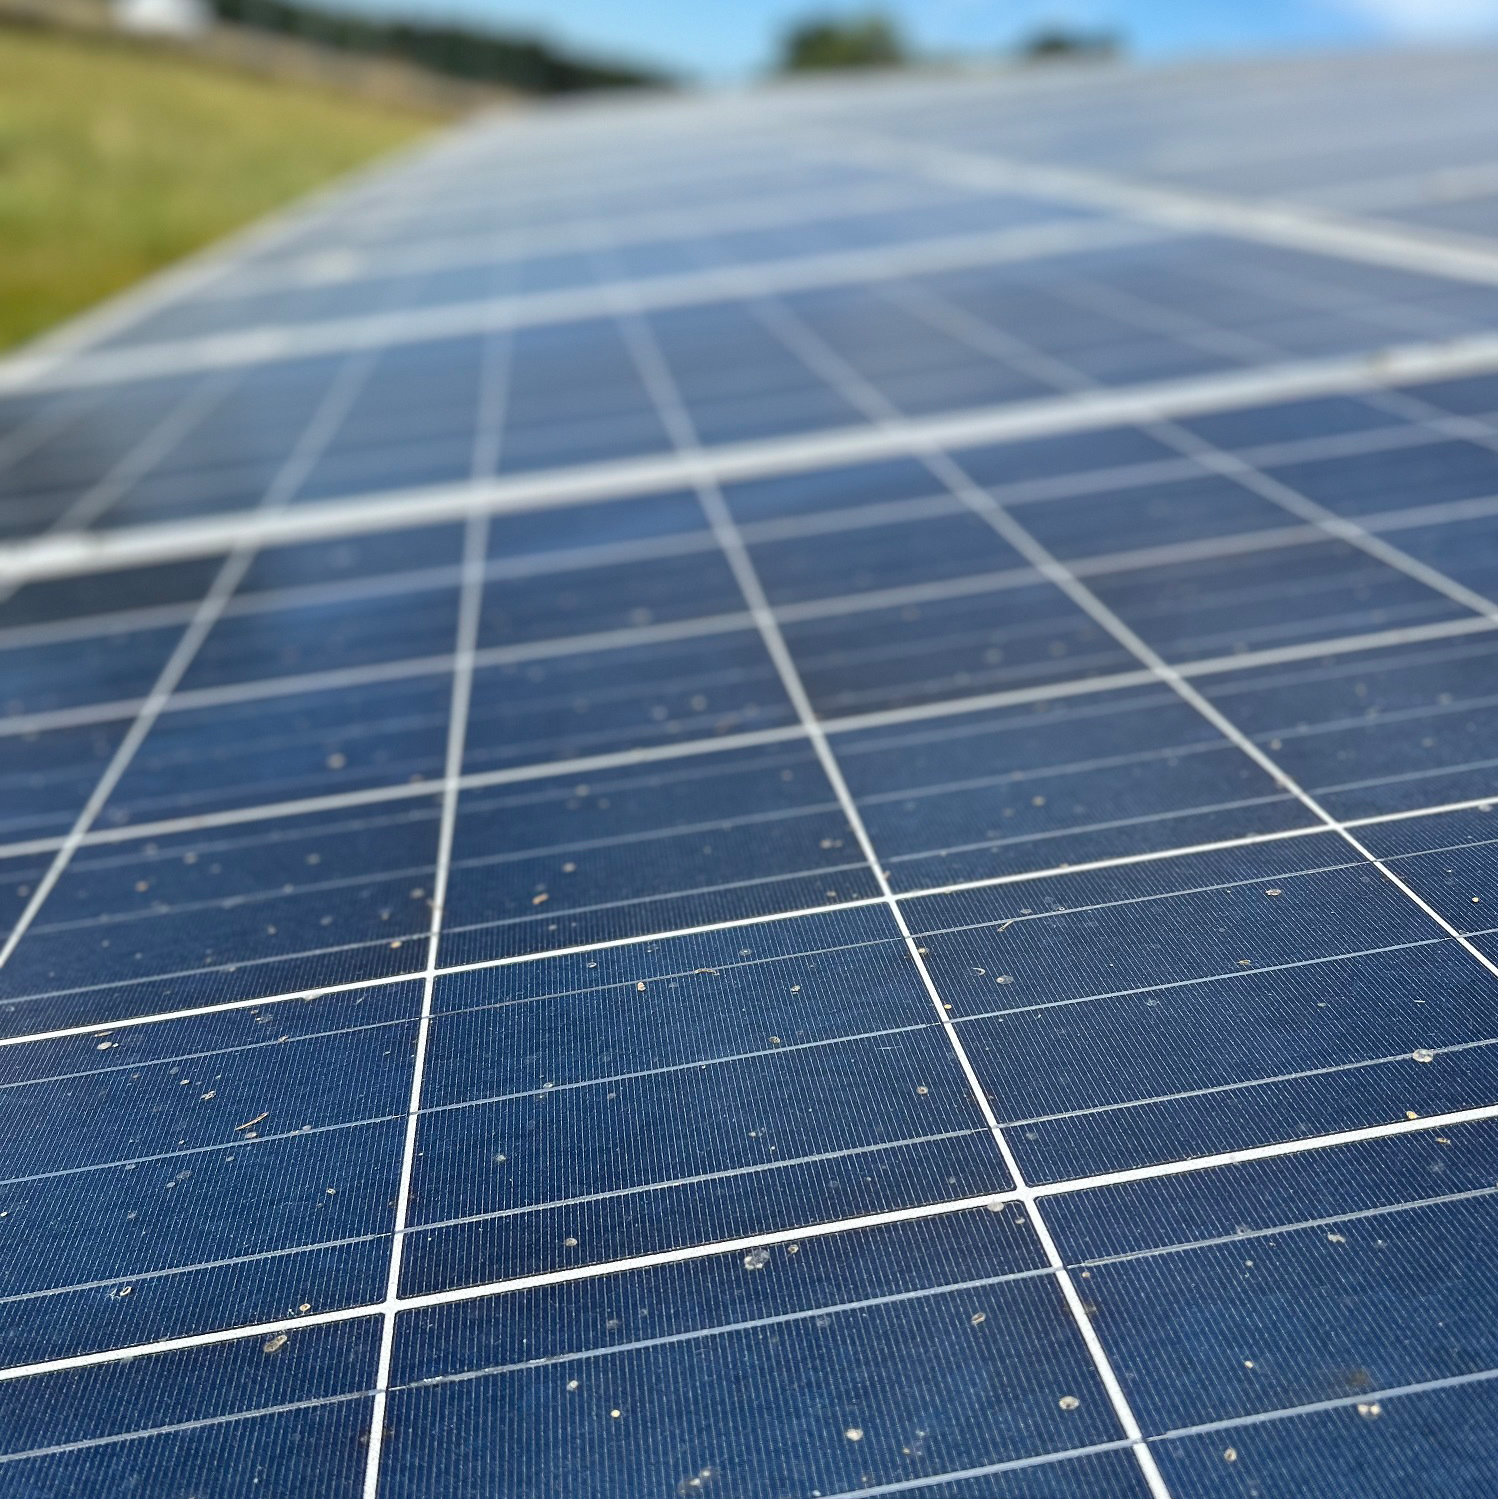 Das Solarkataster ist für Burghausen ein wichtiges und hilfreiches Werkzeug, um die vorhandenen Solarpotenziale in der Stadt gezielt aufzudecken und die einzelnen Bürger auf die Nutzung von Solarenergie aufmerksam zu machen. Fotocredit: Stadt Burghausen / köx